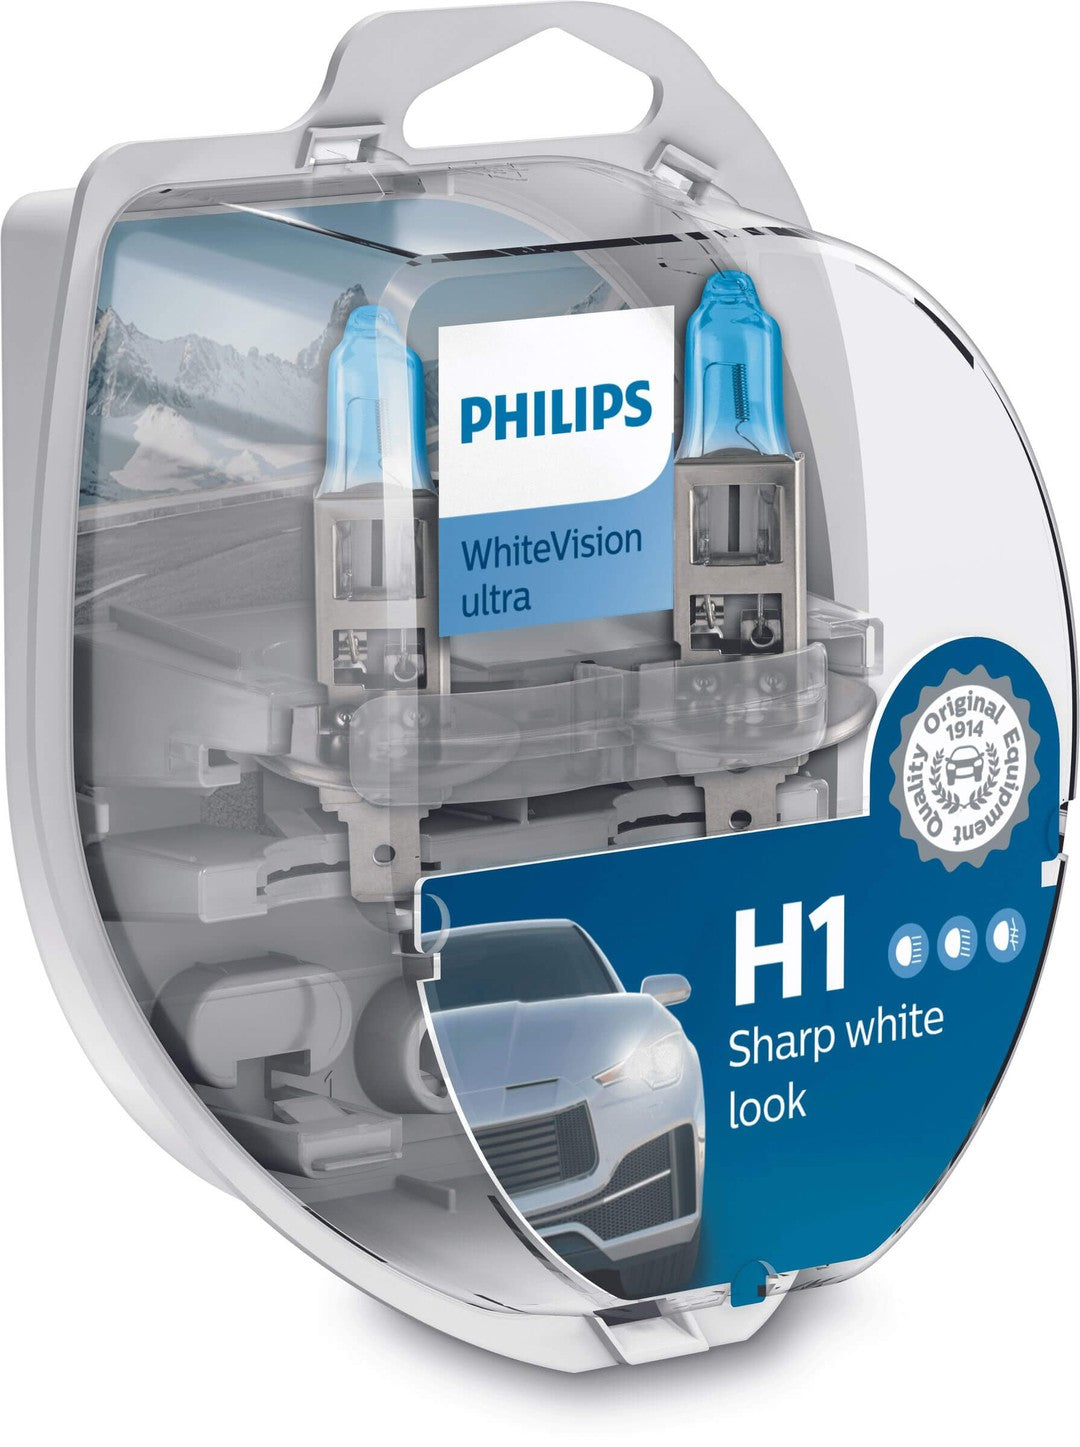 Philips 12258WVUSM WhiteVision ultra lyskilde til forlygter hos Butik24